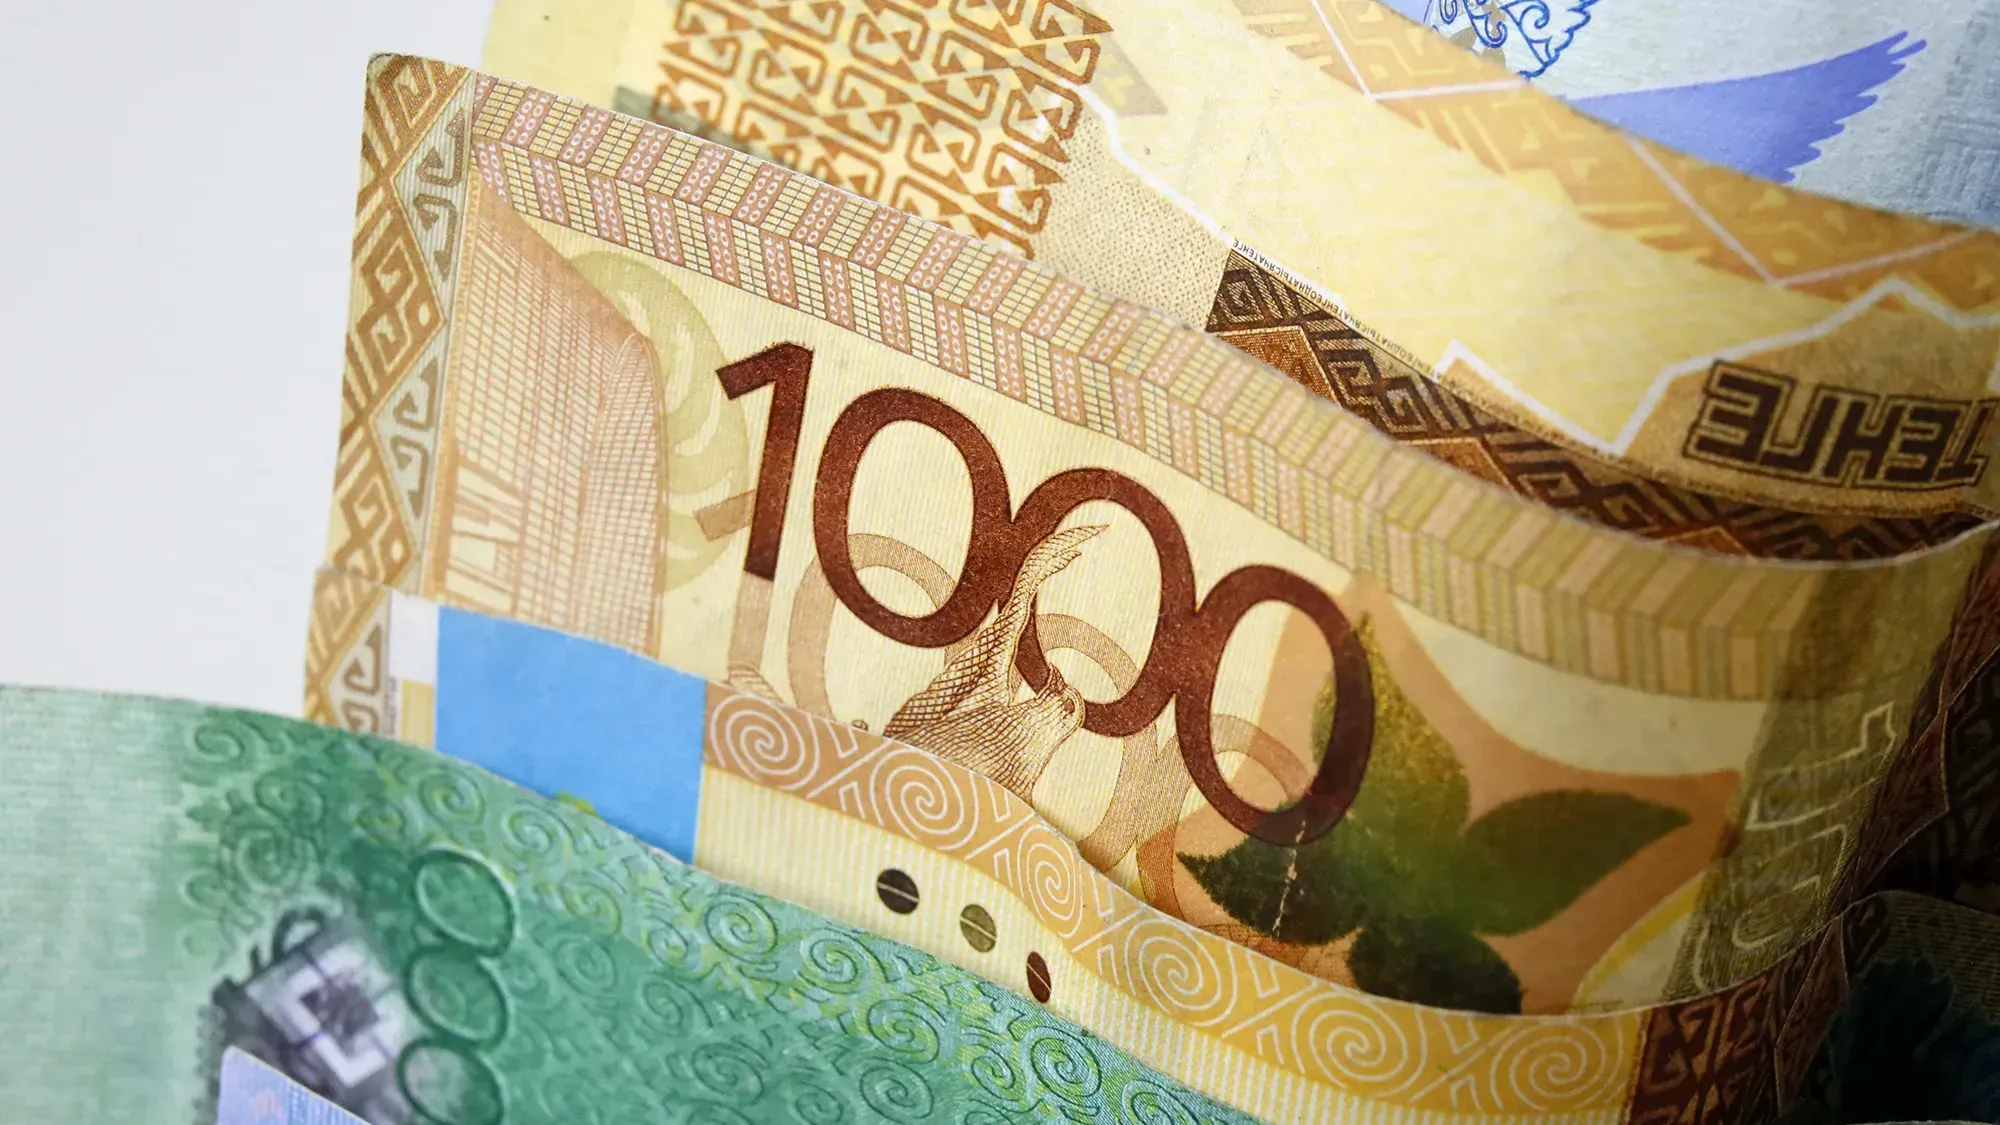 Тенге вырос в цене почти на 1.3% - официальные курсы валют